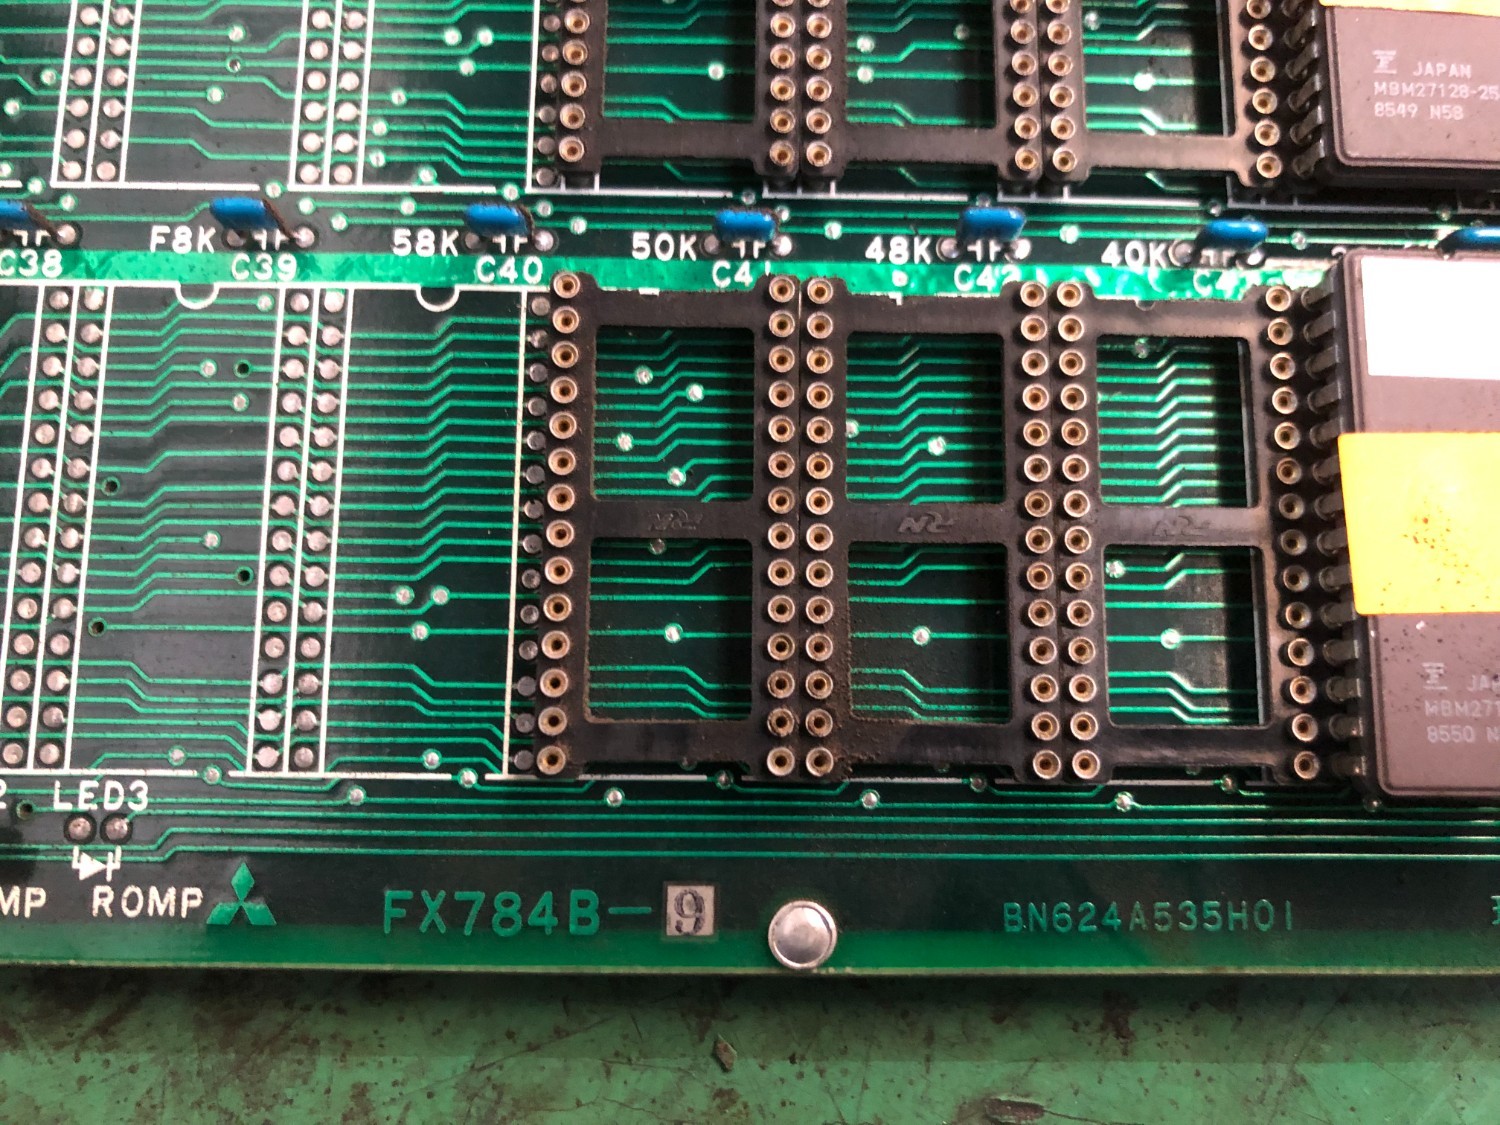 中古その他 基板Circuit Board FX784B-9(BN624A535H01) 三菱